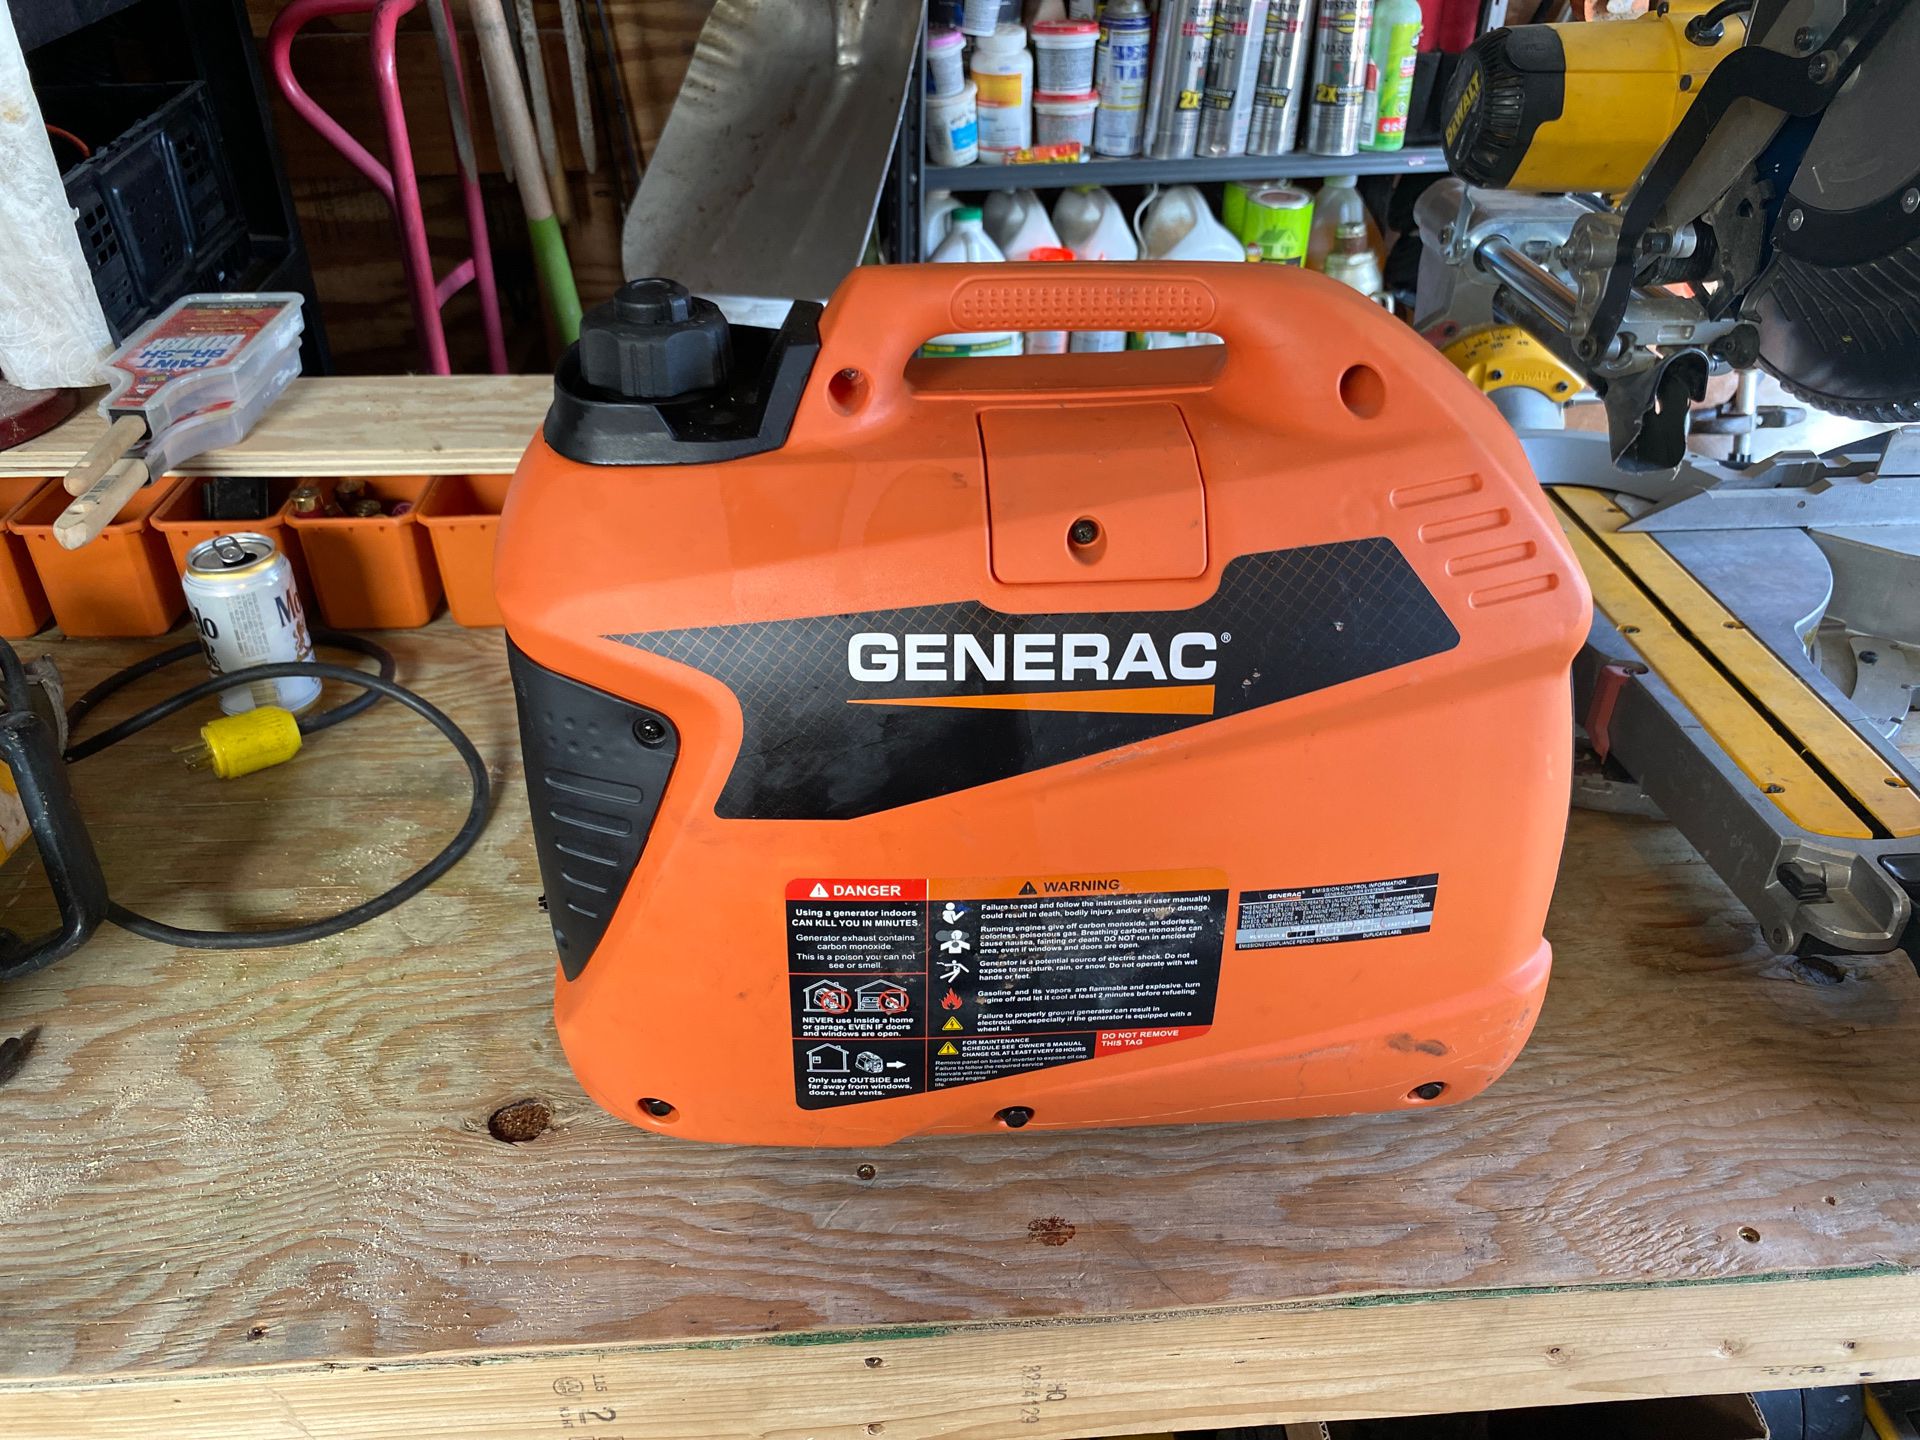 General generator gp1200i